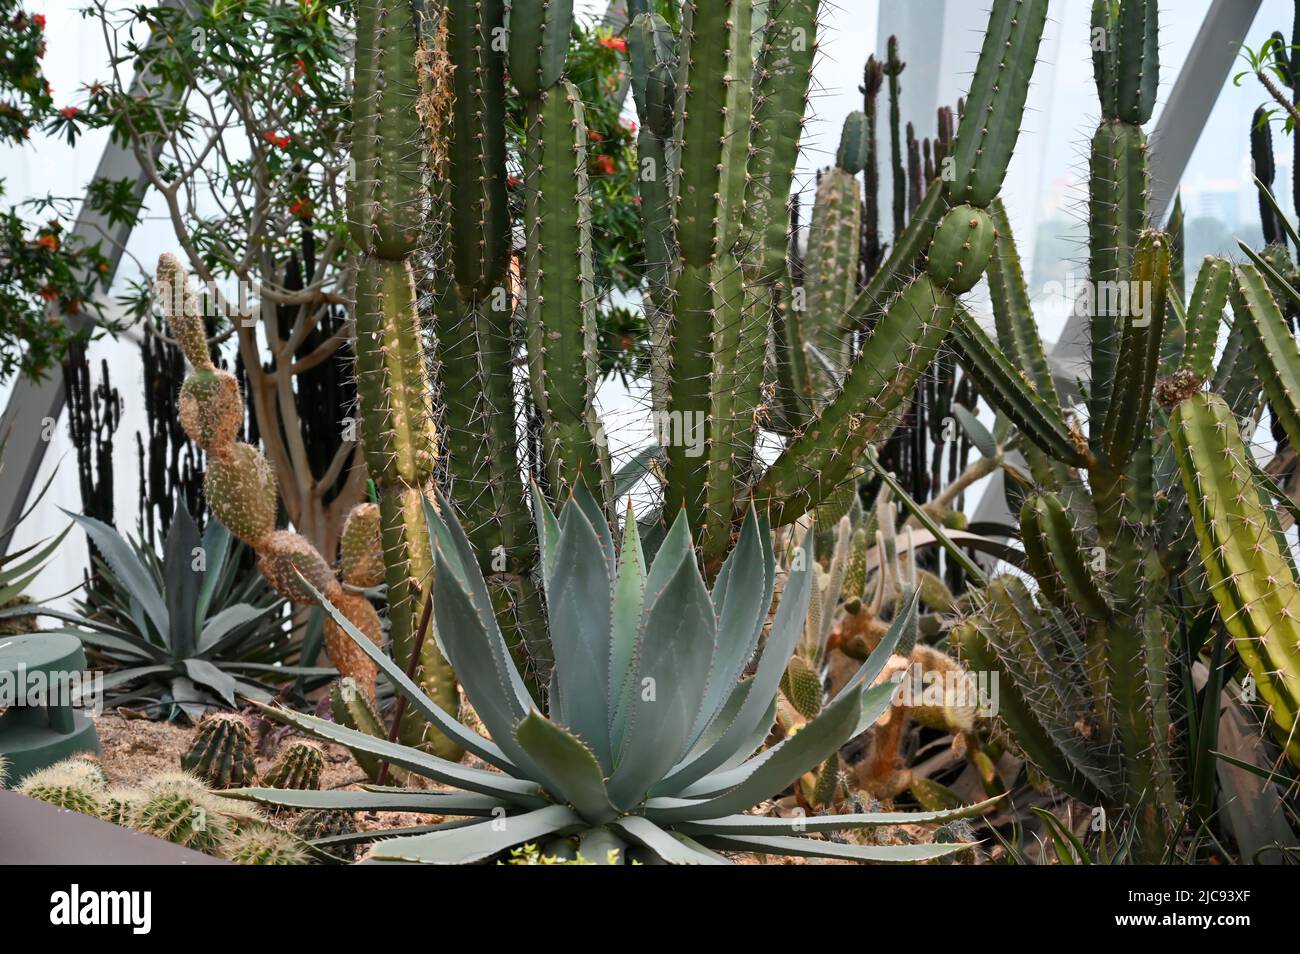 Succulents Cactus Plants growing in desert area in garden Stock Photo